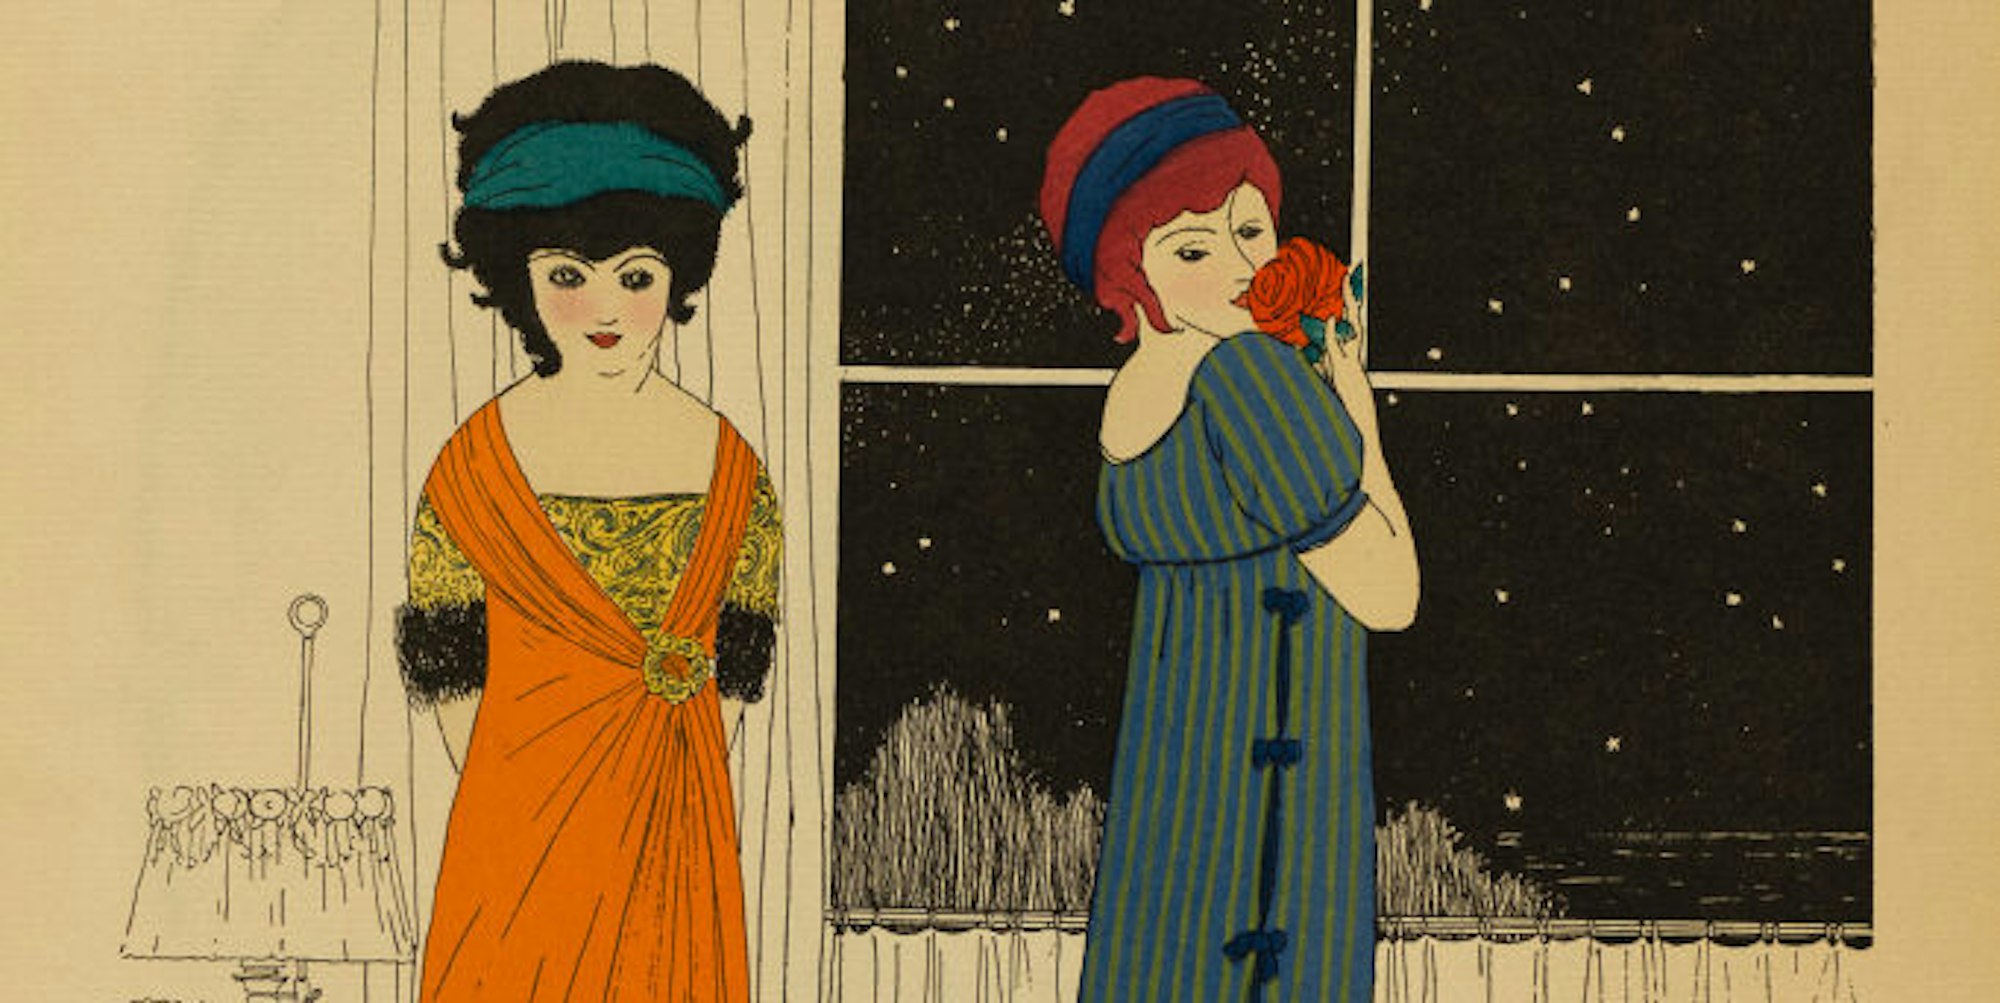 Modeillustration von Paul Iribe aus dem Jahr 1908